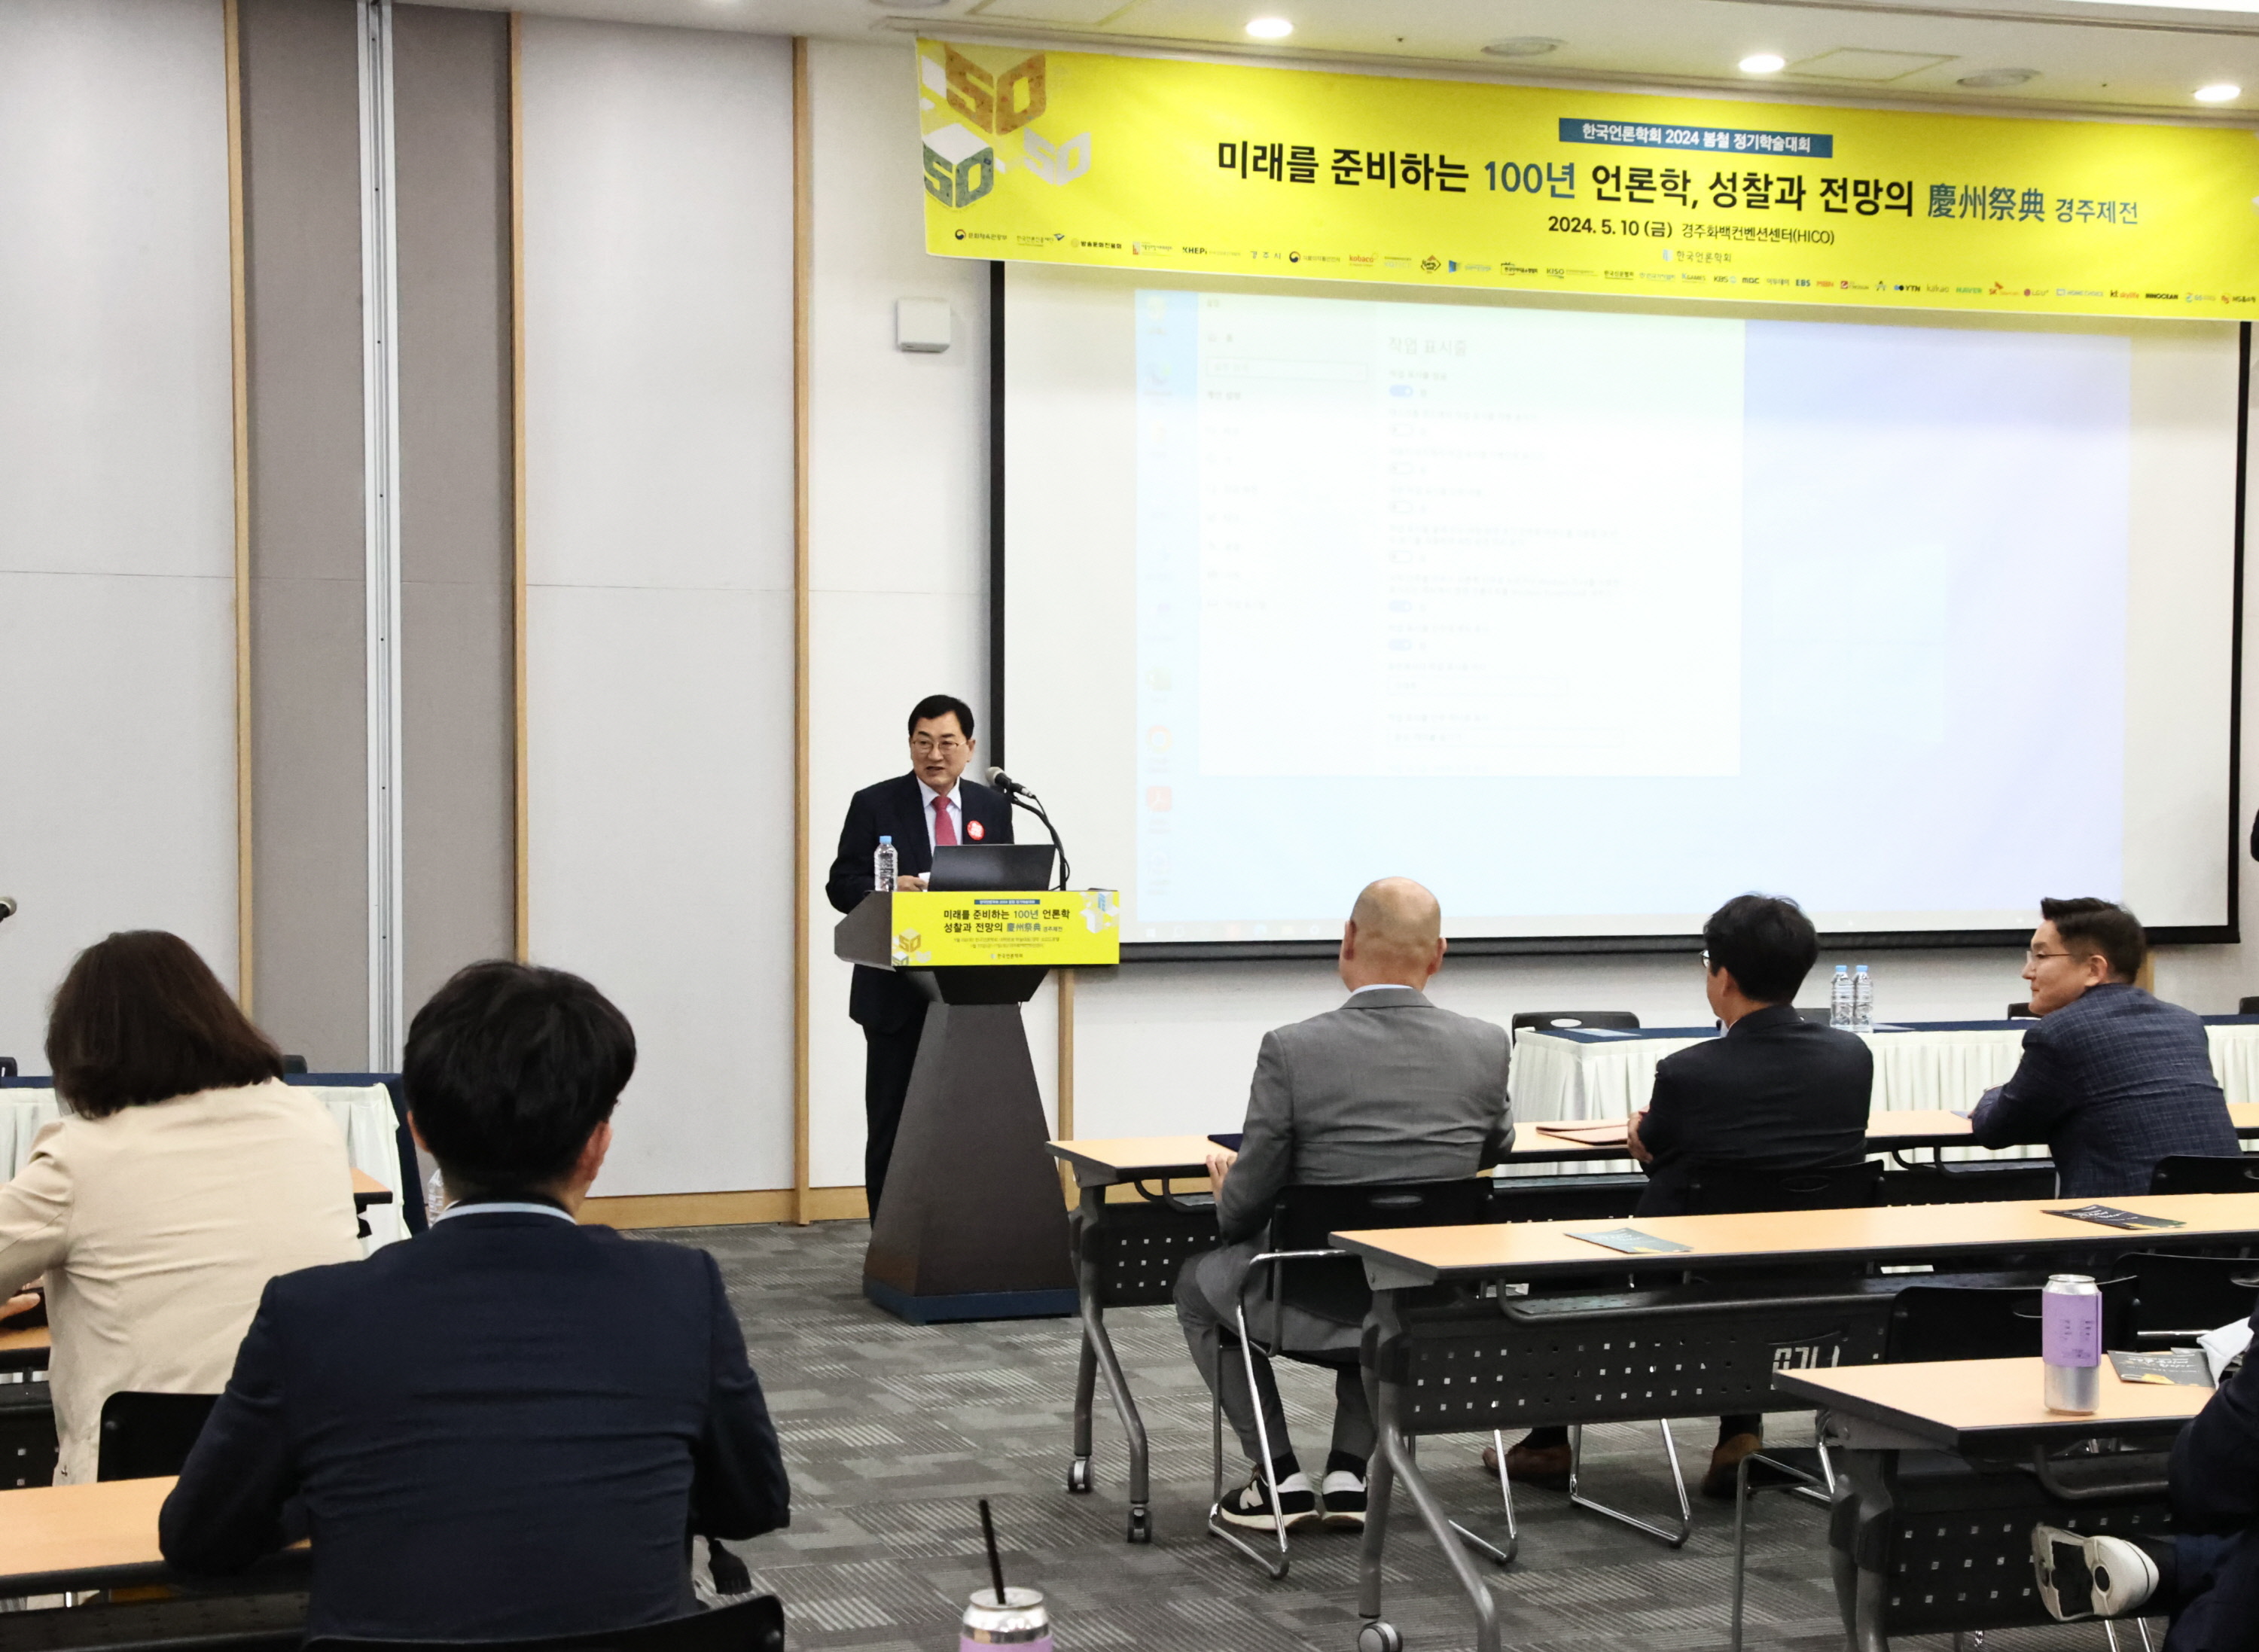 주낙영 시장이 지난 하이코에서 열린 한국언론학회 정기학술대회에 참석해 인사말씀을 하고 있다.